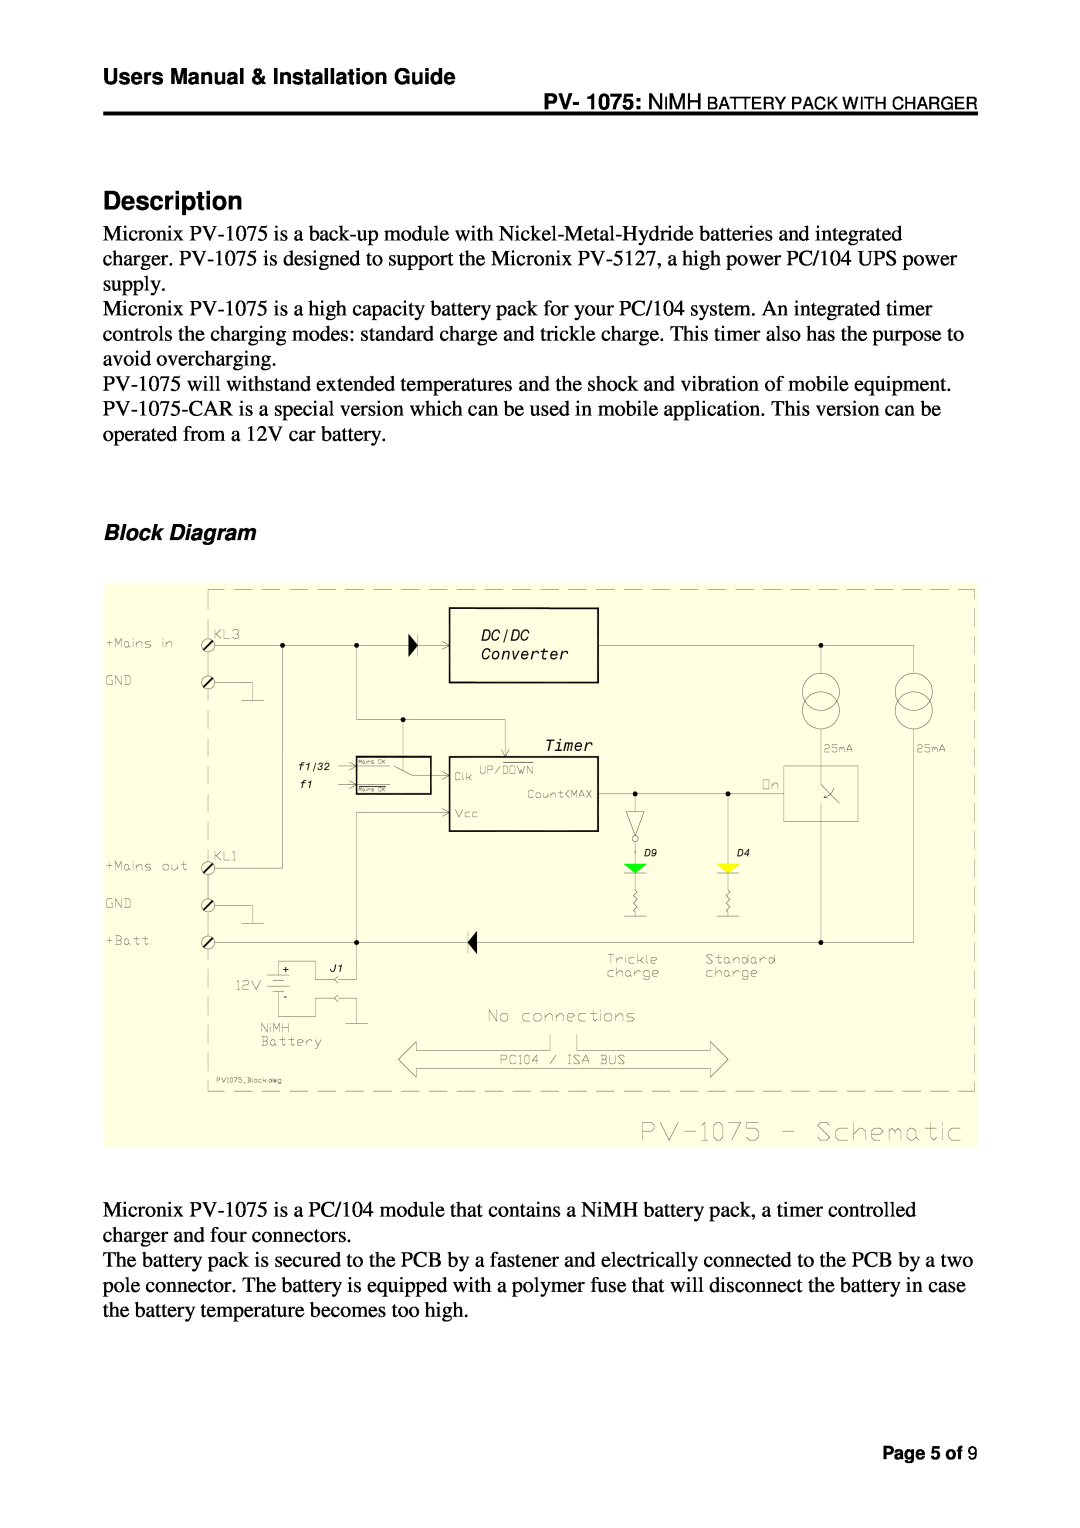 Micro Technic PV-1075-CAR user manual Description, Block Diagram, Users Manual & Installation Guide 